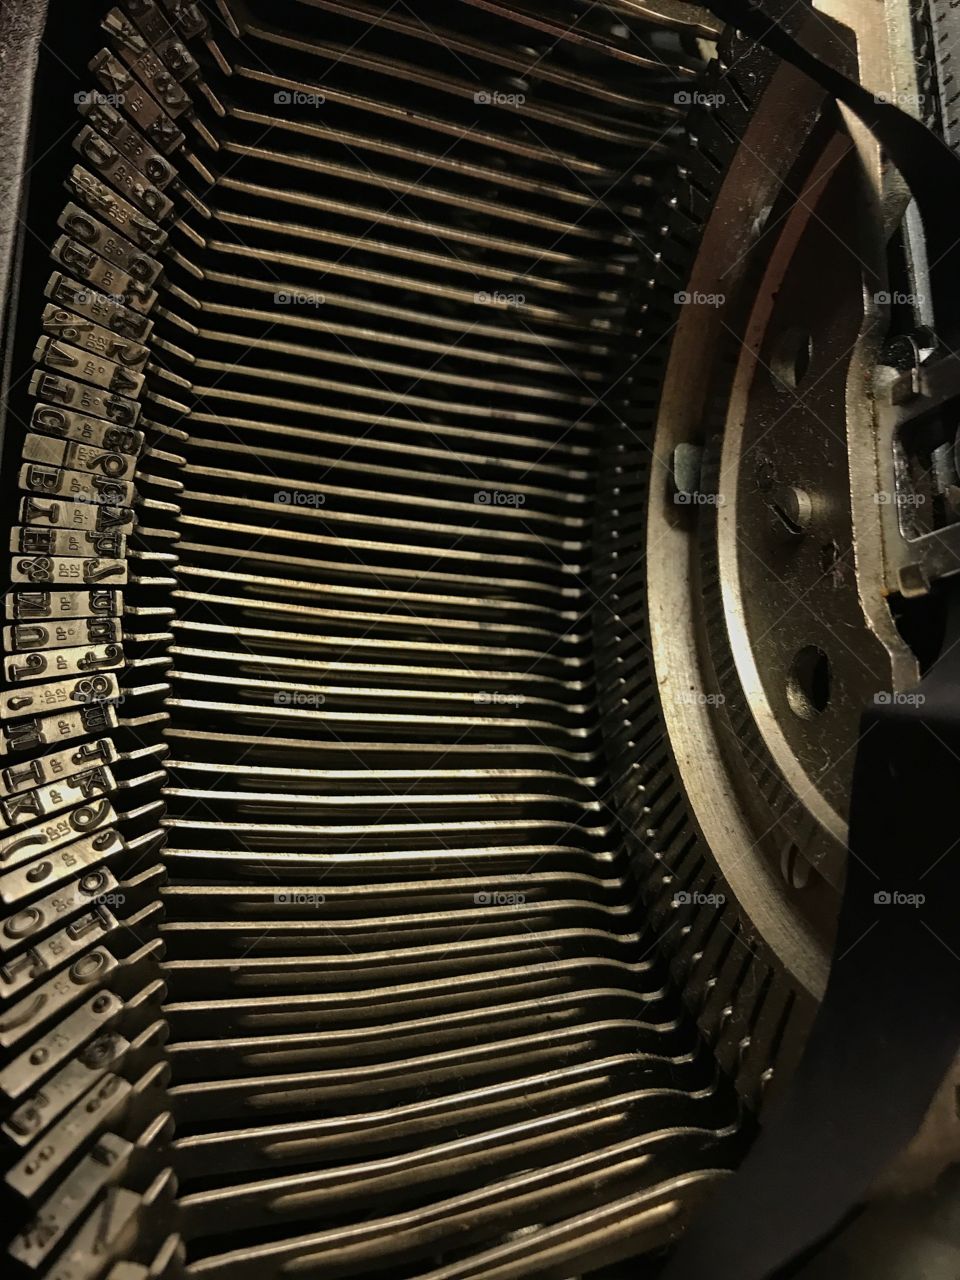 Inside a typewriter